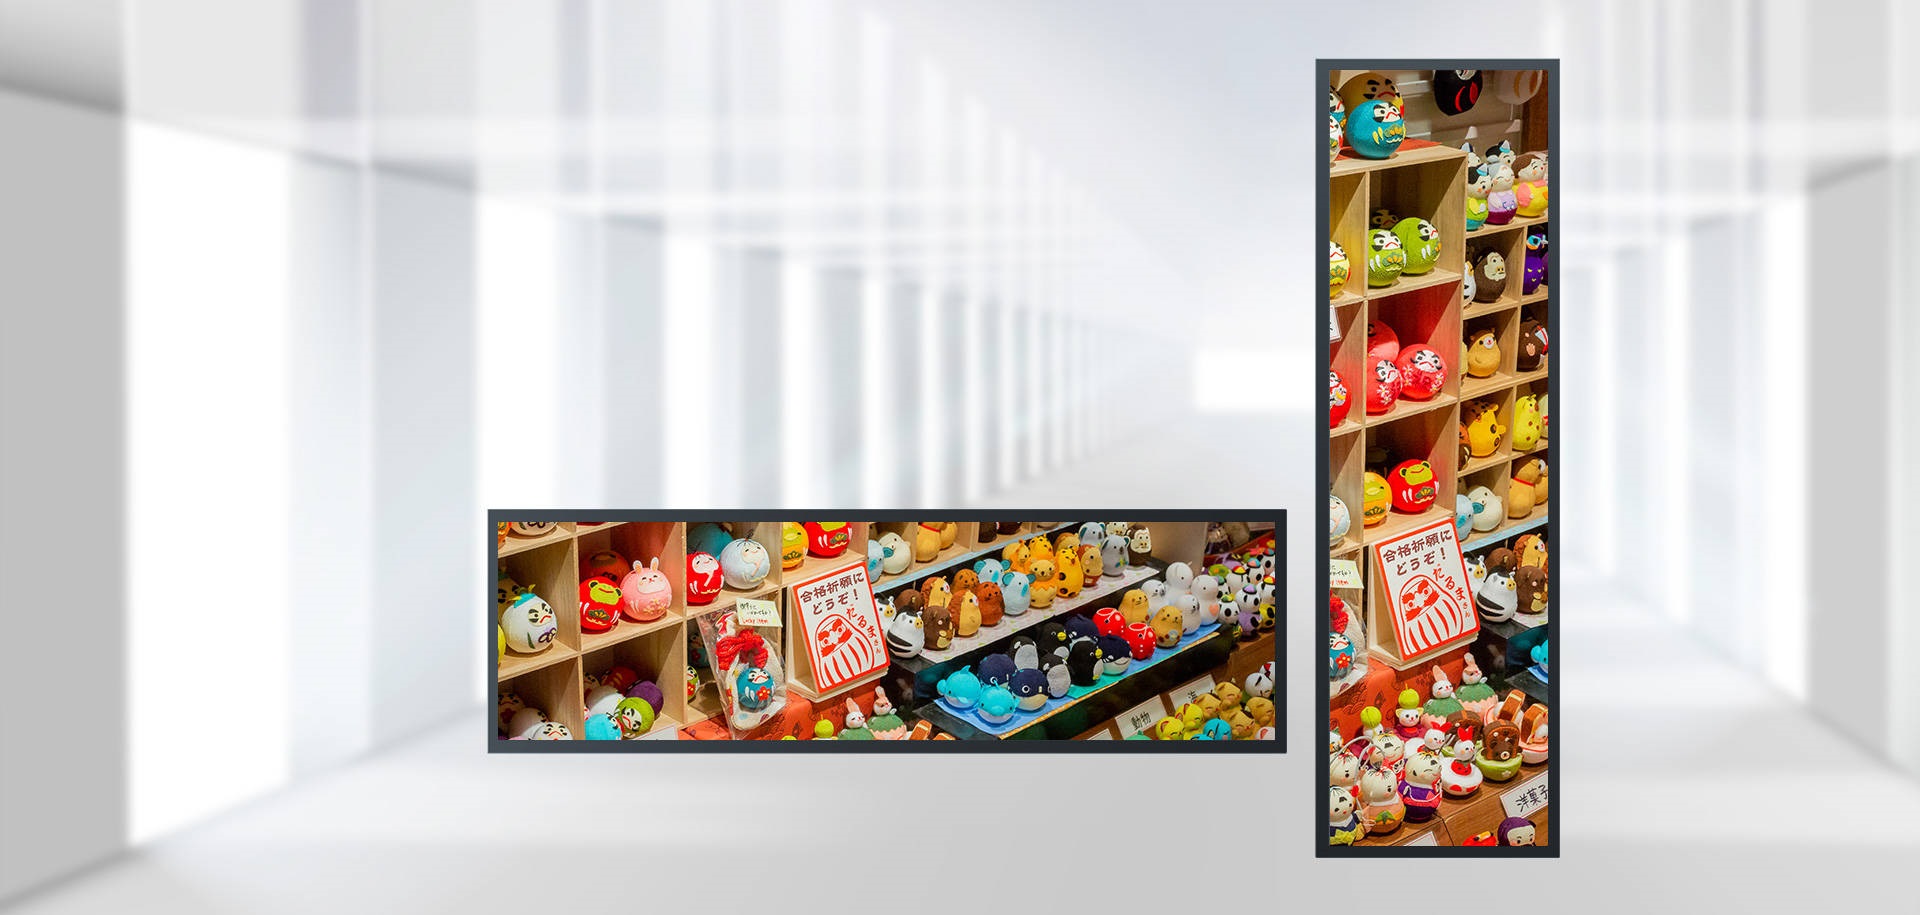 Valor d'aplicació del reproductor publicitari de pantalla de barra de tira LCD al gran supermercat